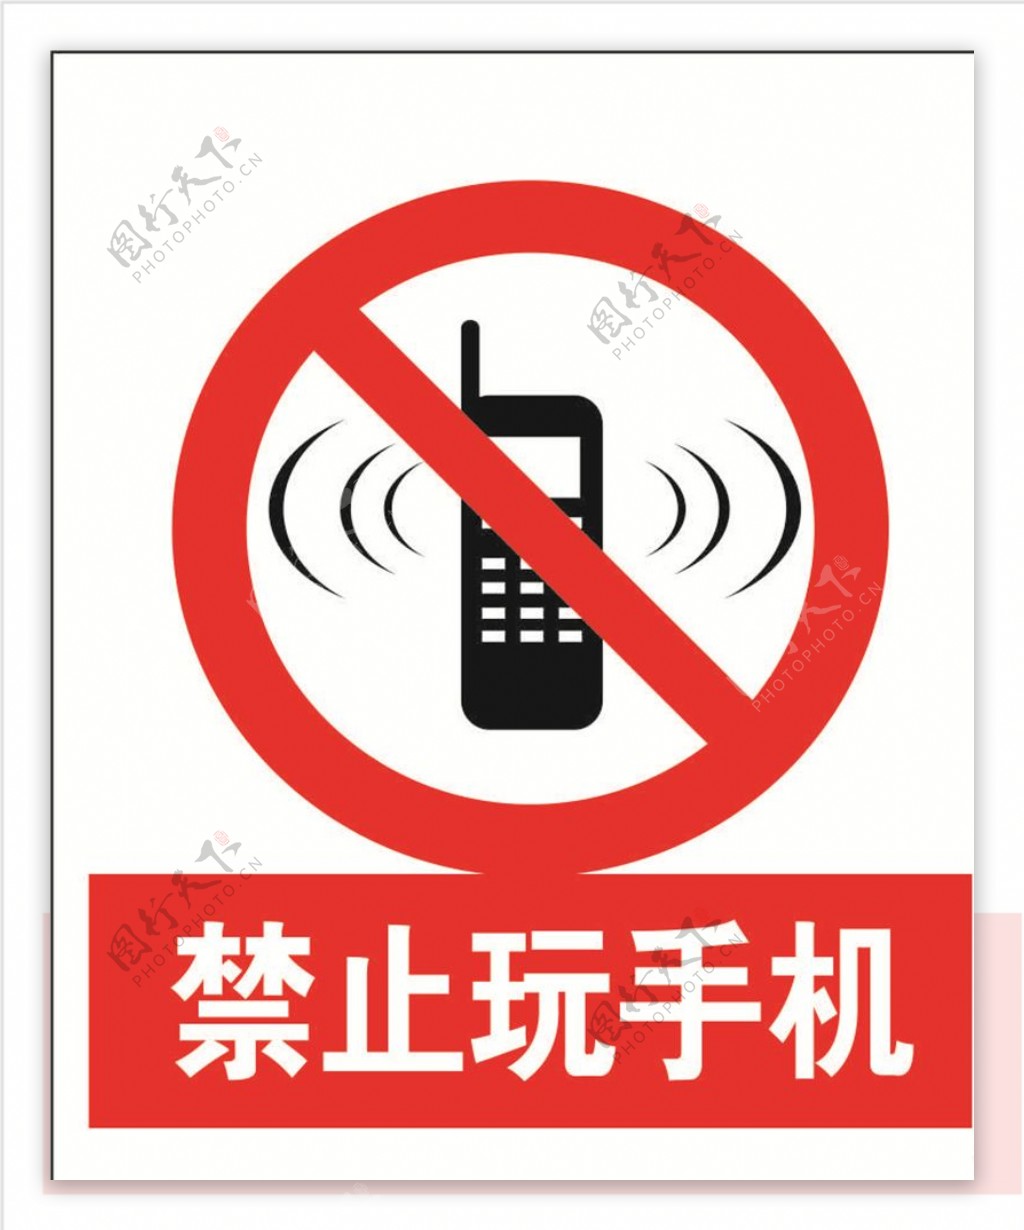 禁止玩手机